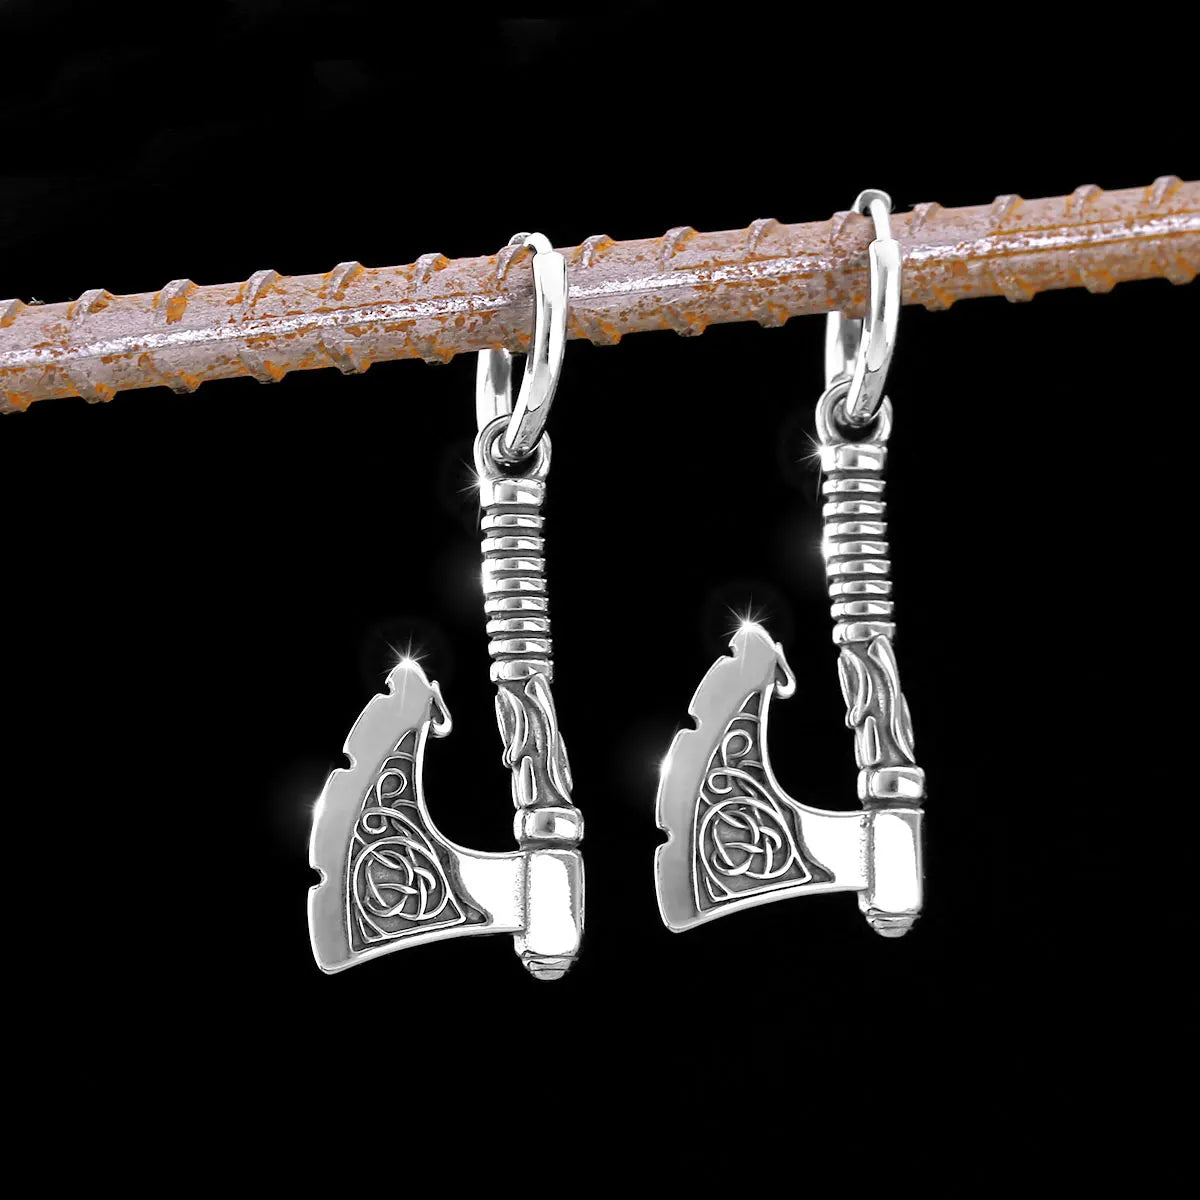 Vintage Viking Axe Stainless Steel Earrings